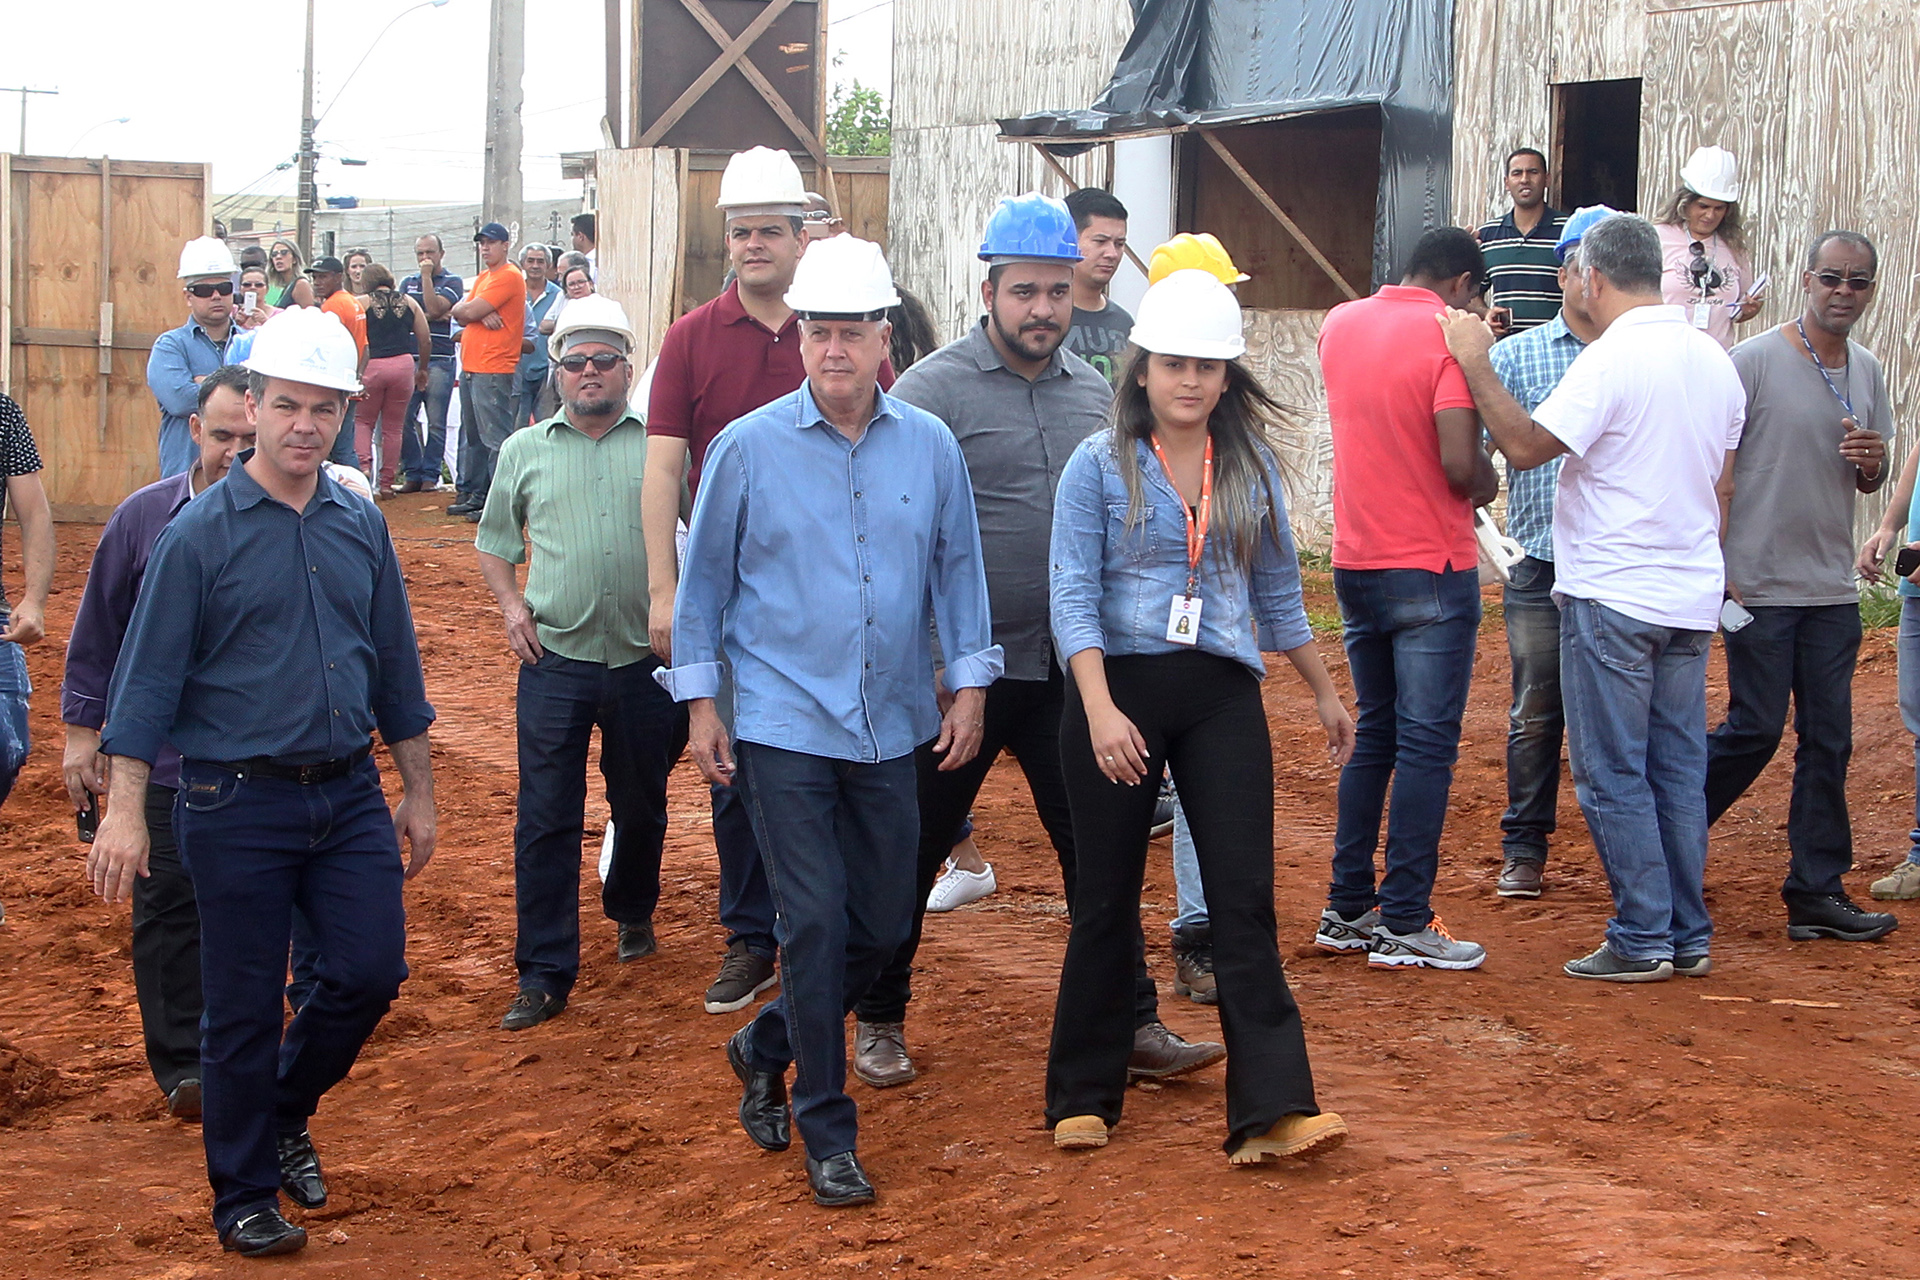 Governador de Brasília vistoriou a construção neste sábado (19). Iniciada em agosto, previsão é que a Feira Permanente do Riacho Fundo II seja entregue em abril de 2018